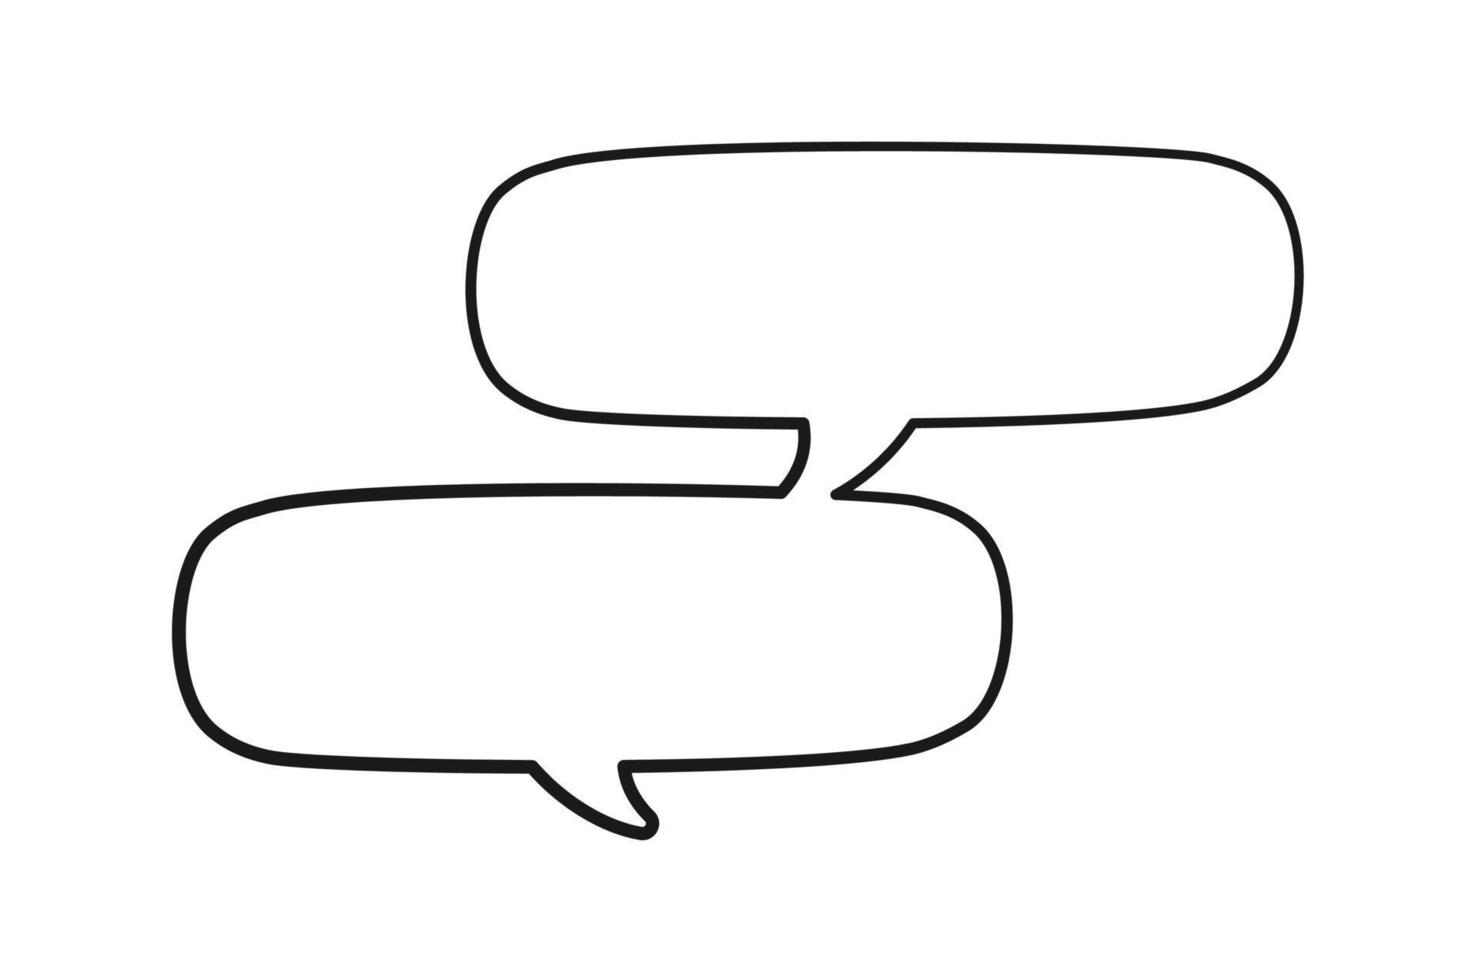 Empty speech bubble multiple conversation template. Comic speech bubble doodle outline. Vector illustration.